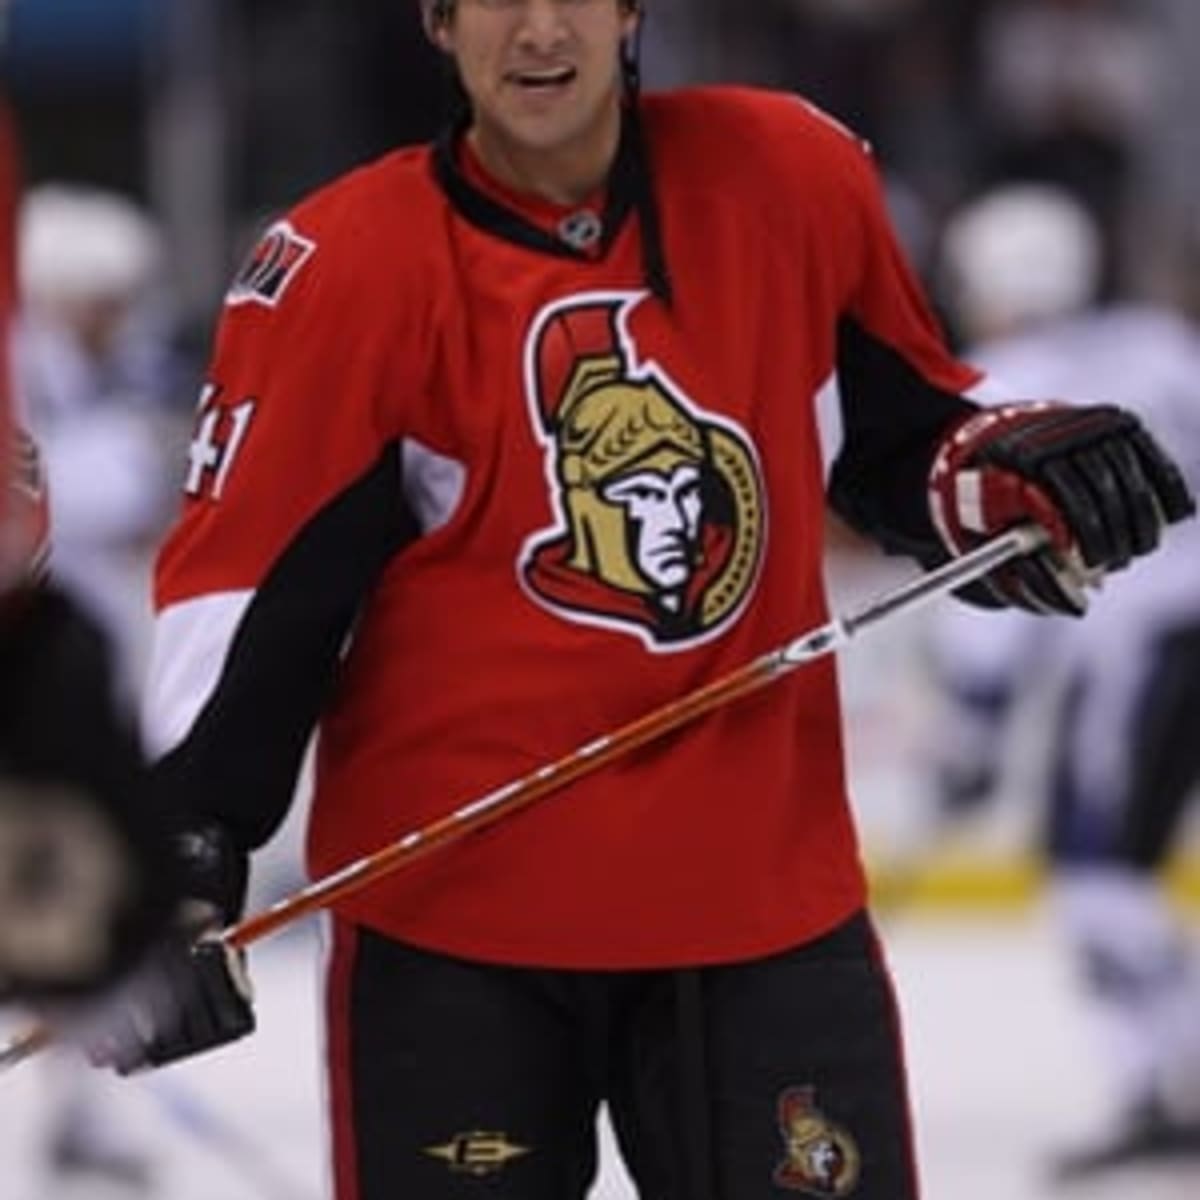 2006-07 Jason Spezza Game Worn Ottawa Senators Jersey.  Hockey